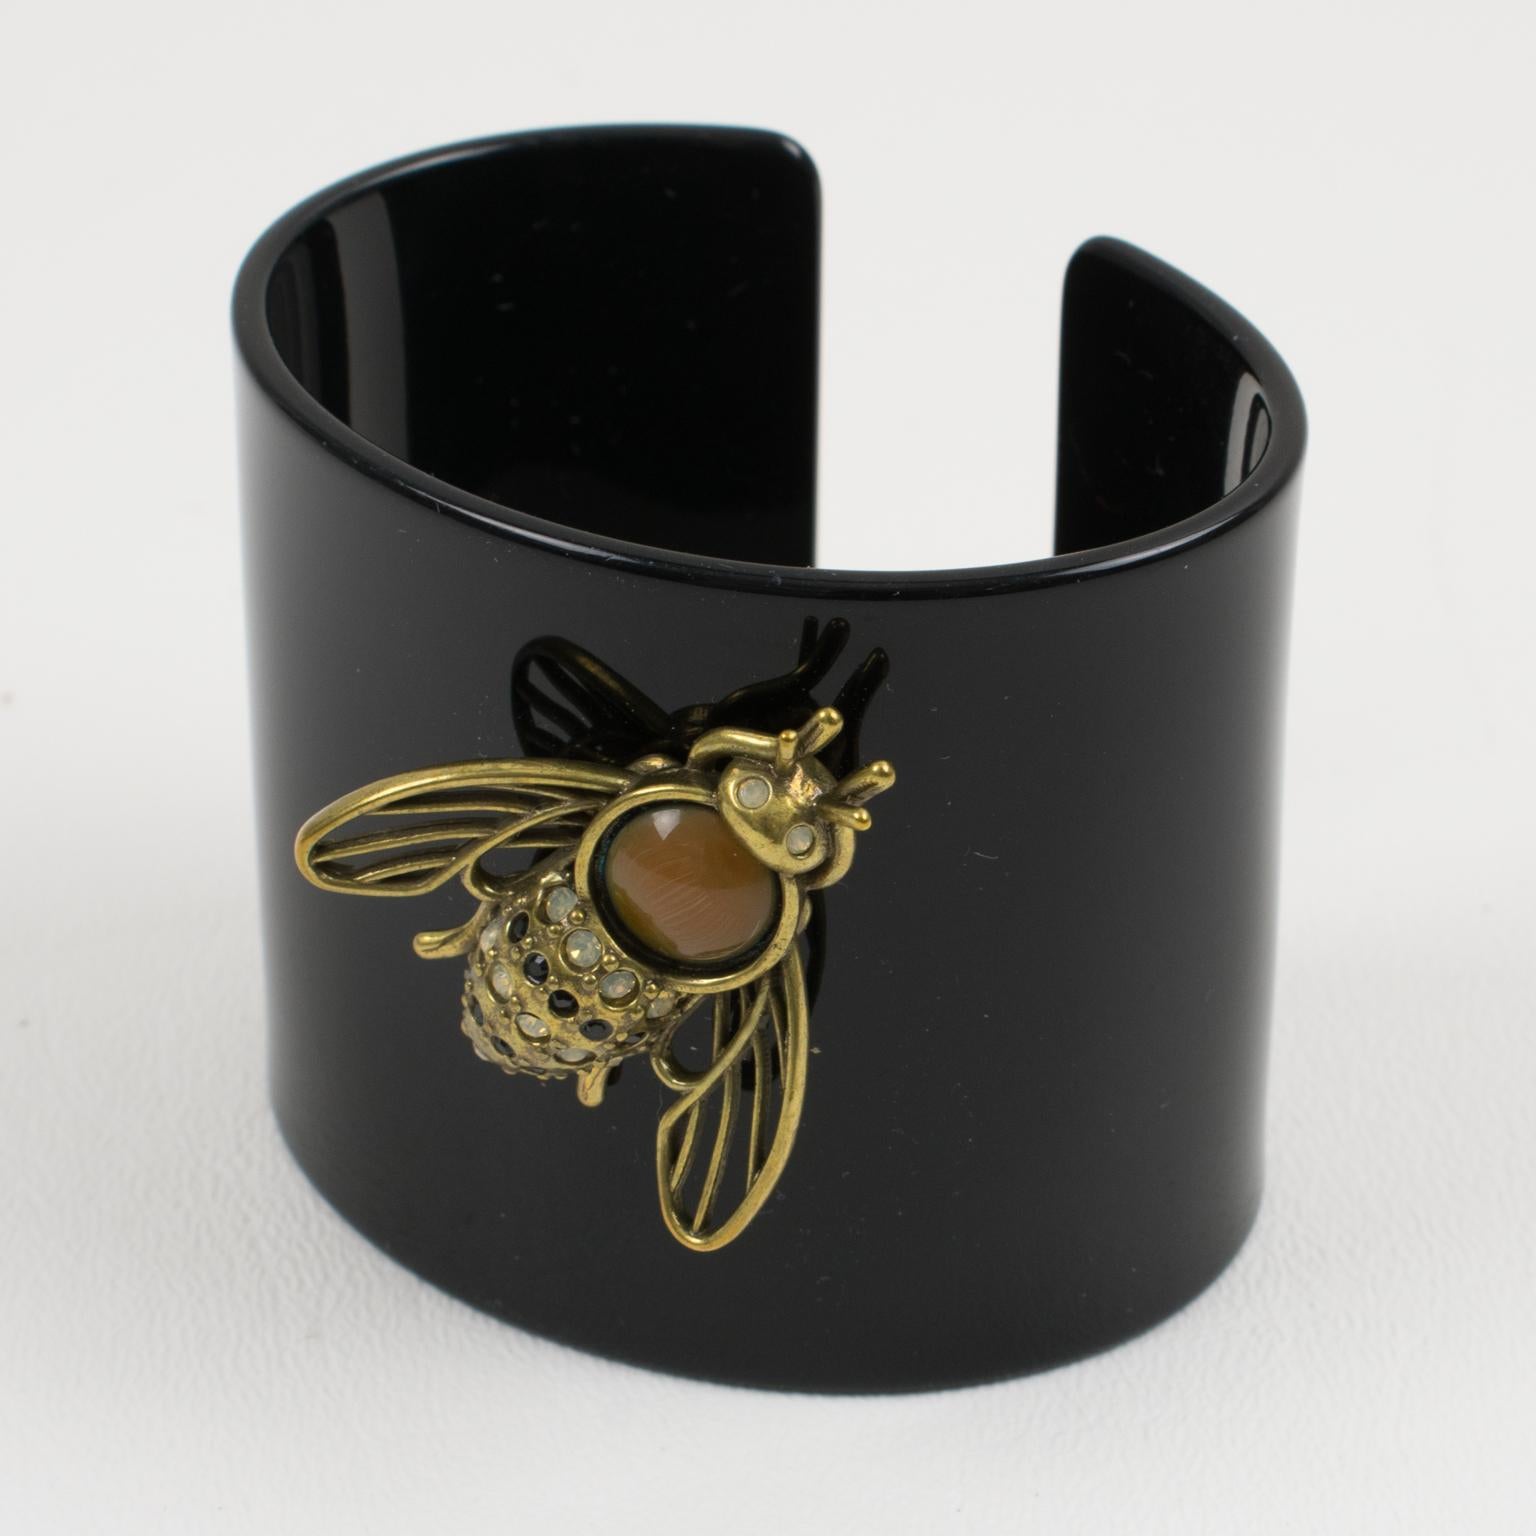 Voici un ravissant bracelet manchette en résine noire surdimensionnée de Jean Paul Gaultier Paris, orné d'une abeille en laiton doré. L'abeille est ornée de strass en cristal noir et blanc opalescent et surmontée d'un grand cabochon en verre coulé